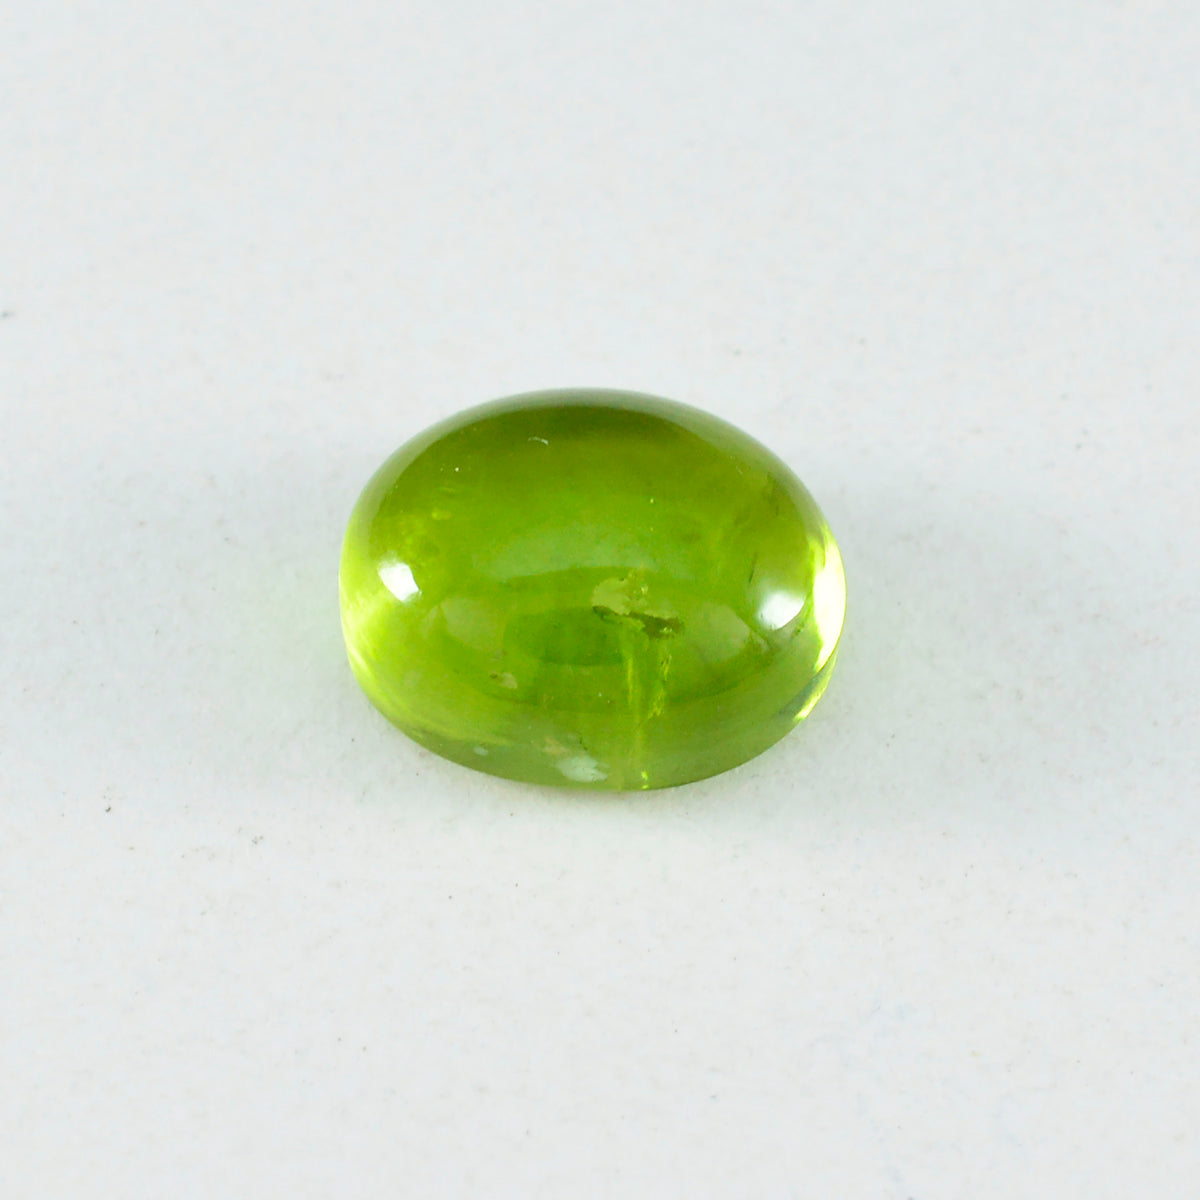 riyogems 1шт зеленый перидот кабошон 12x16 мм овальной формы, драгоценный камень хорошего качества